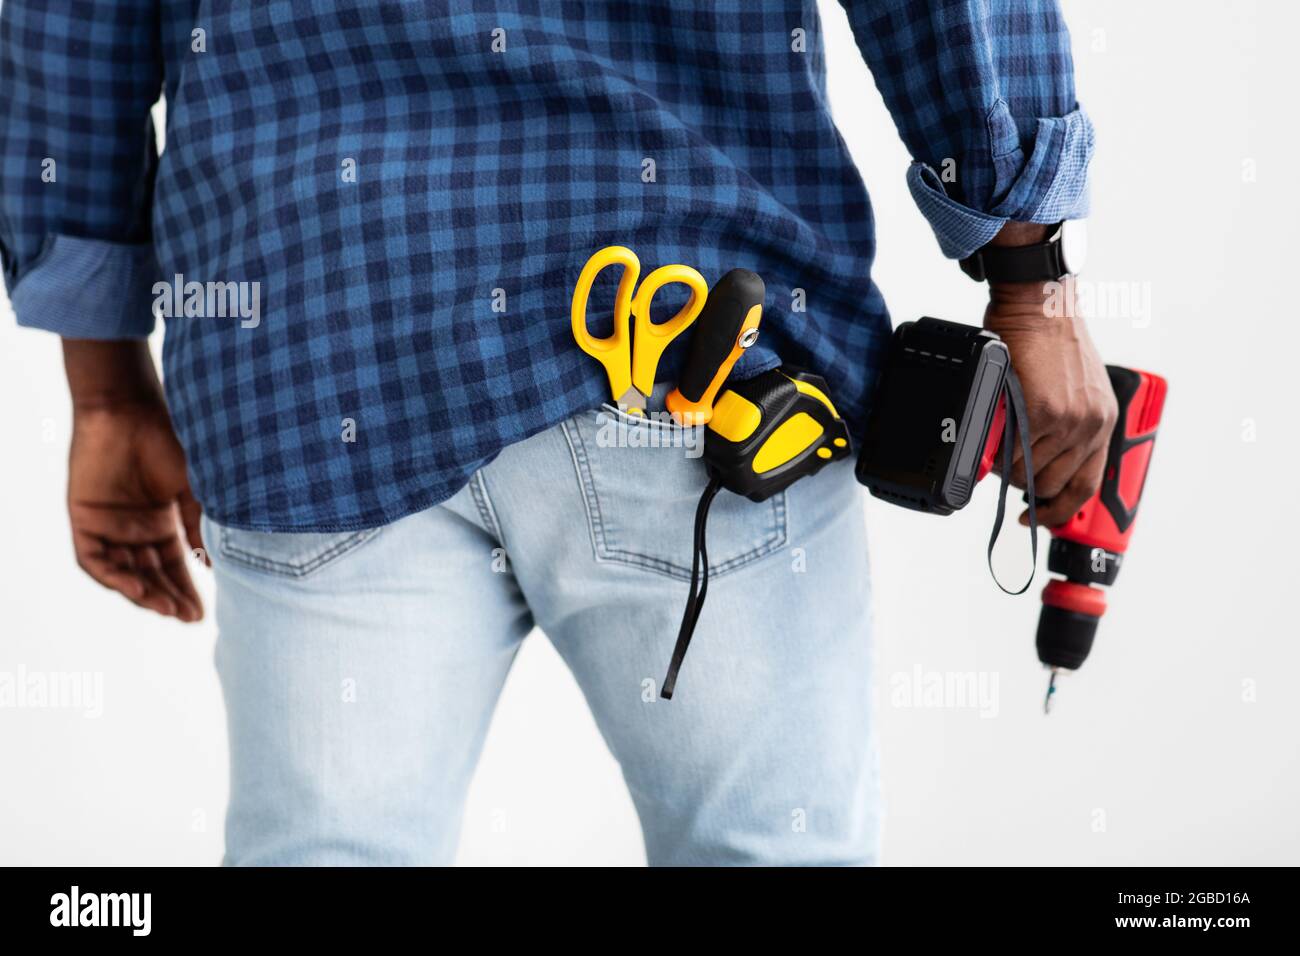 Utensile per foratura e fissaggio. Uomo afroamericano che tiene il trapano elettrico, il nastro di misurazione e le forbici in tasca Foto Stock